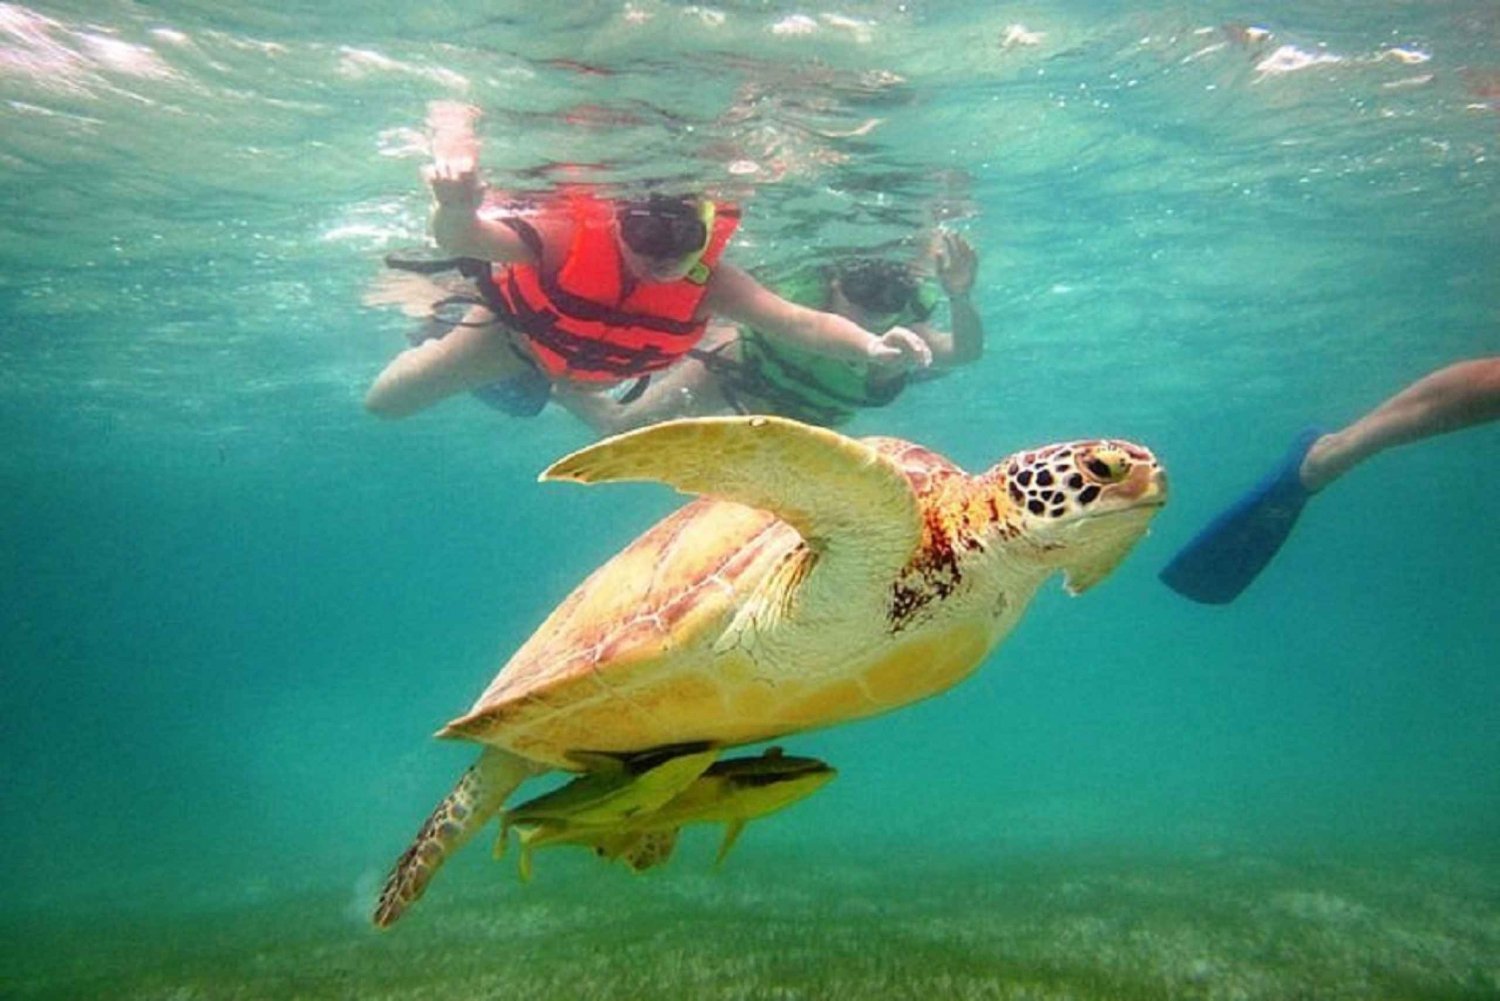 Tours de nado con tortugas en Zona Hotelera, Cancún, México